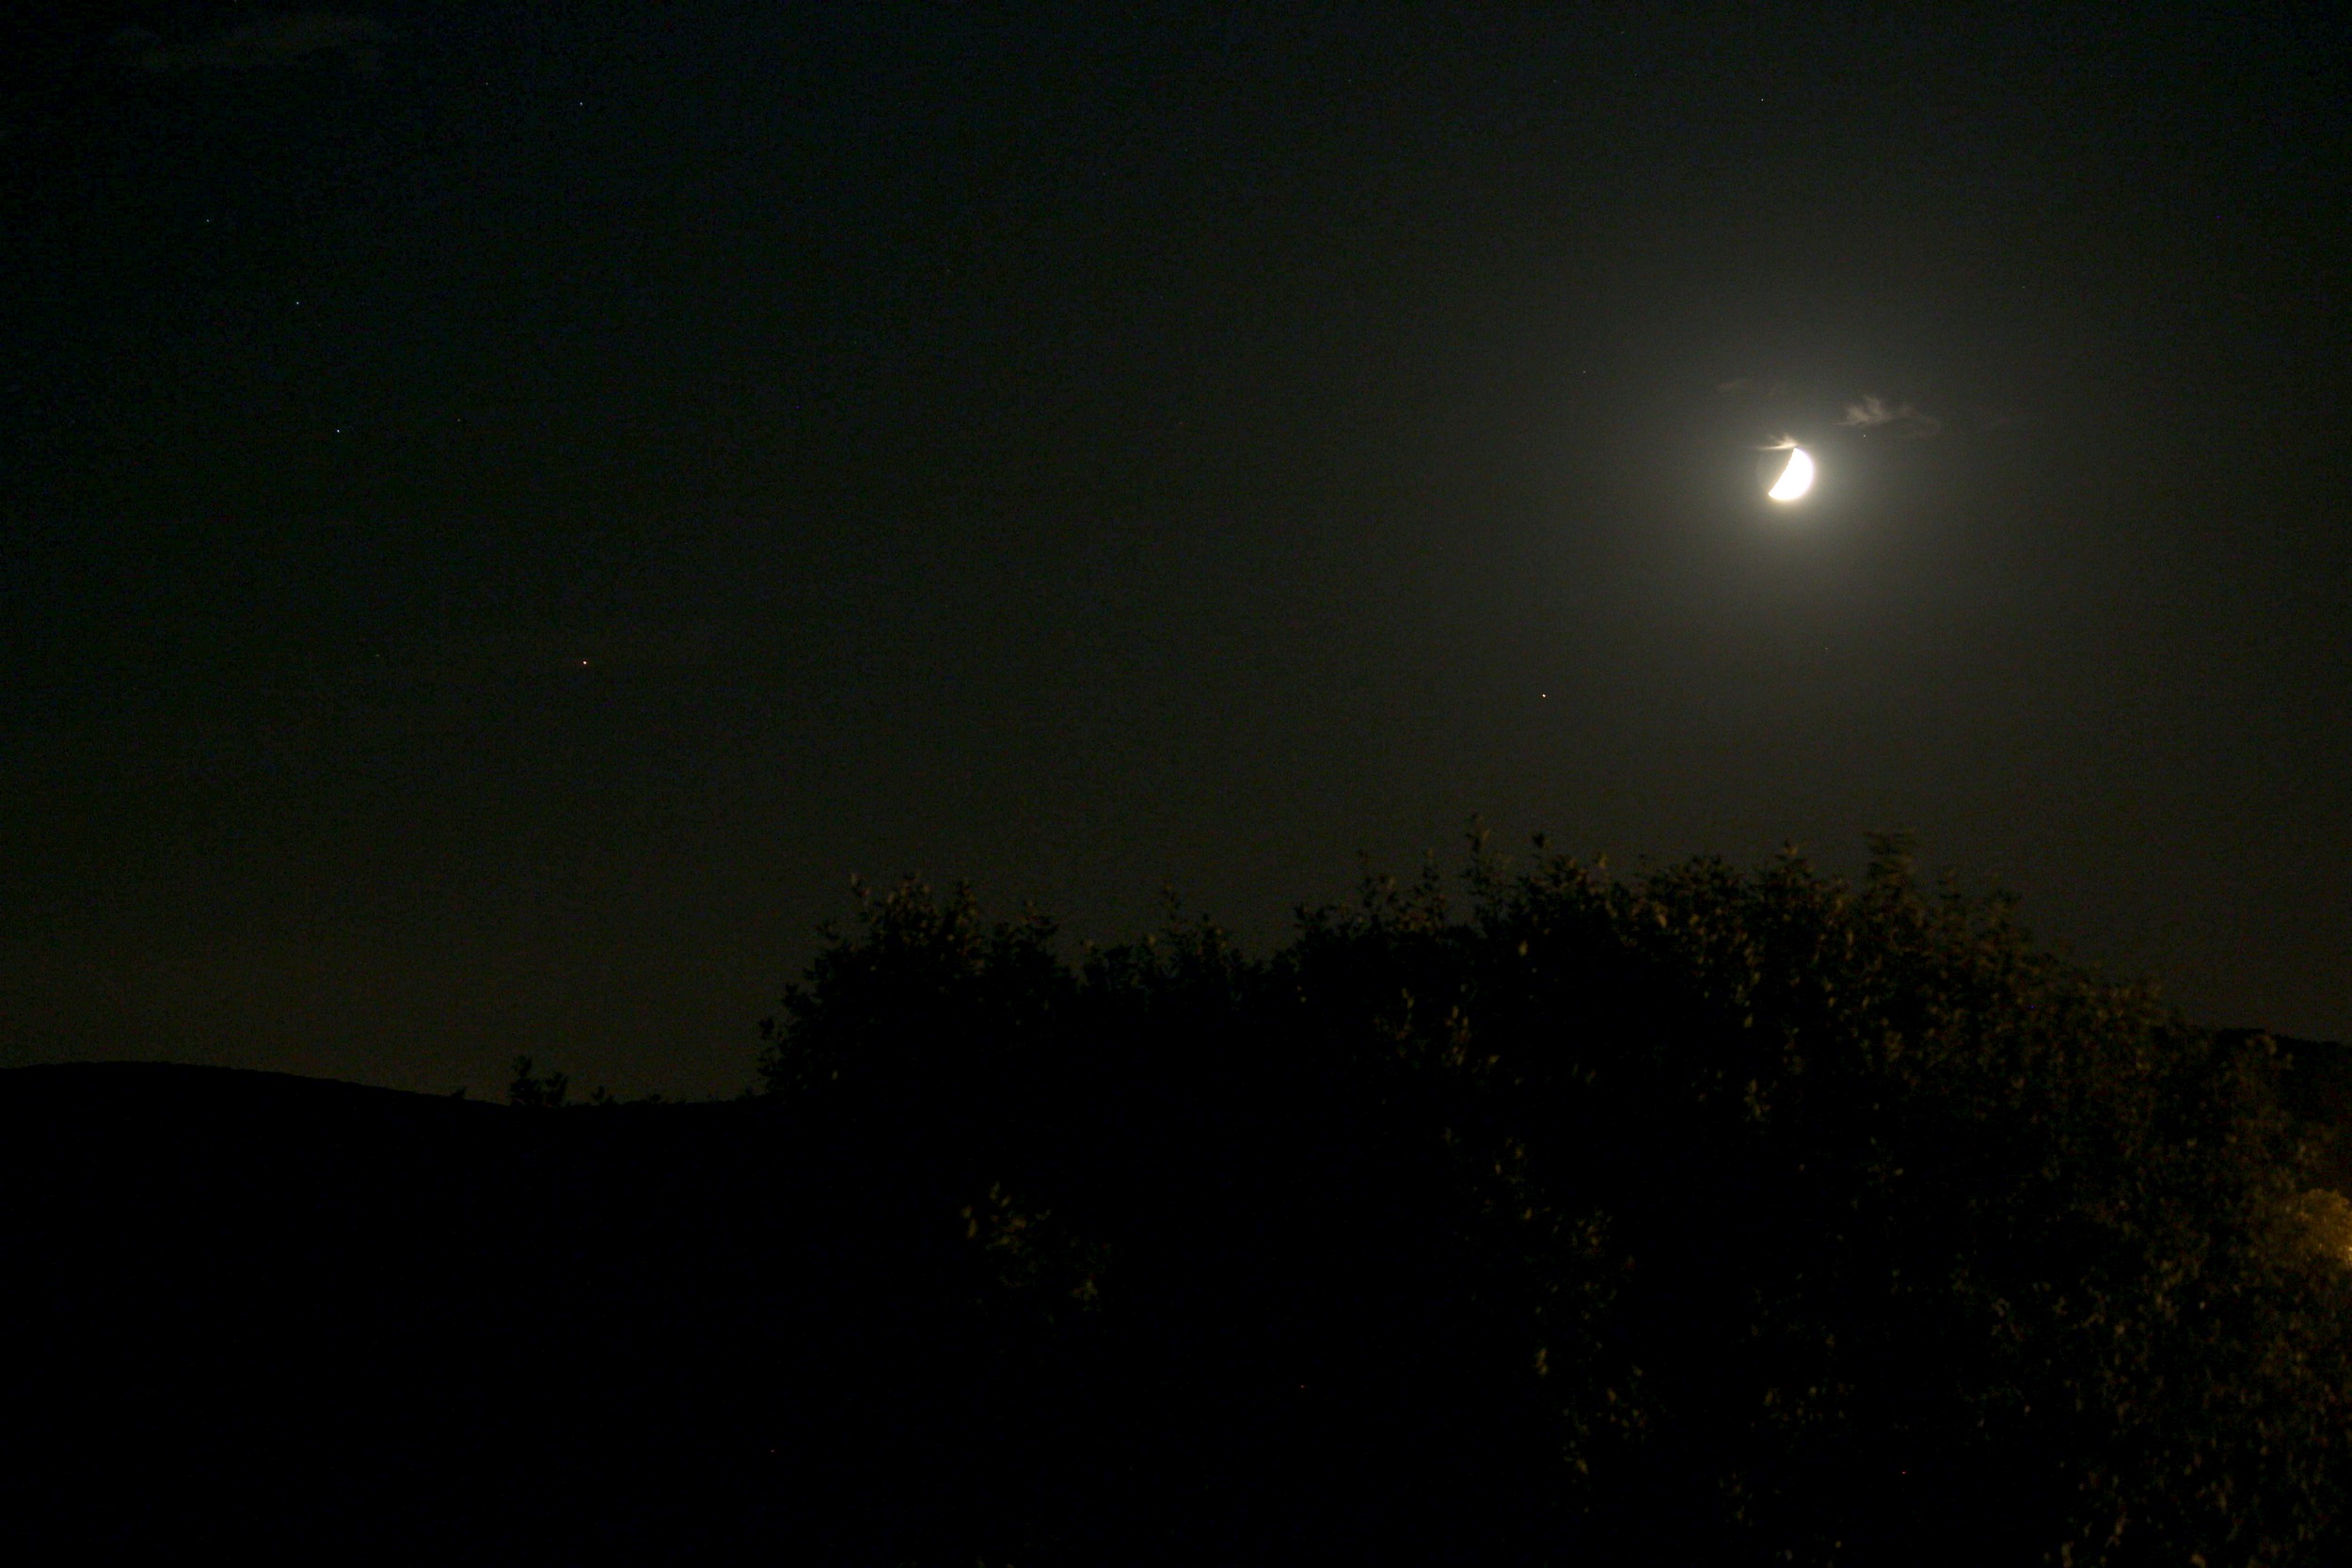 Lune + Saturne et Mars + éclairage public_2.jpg